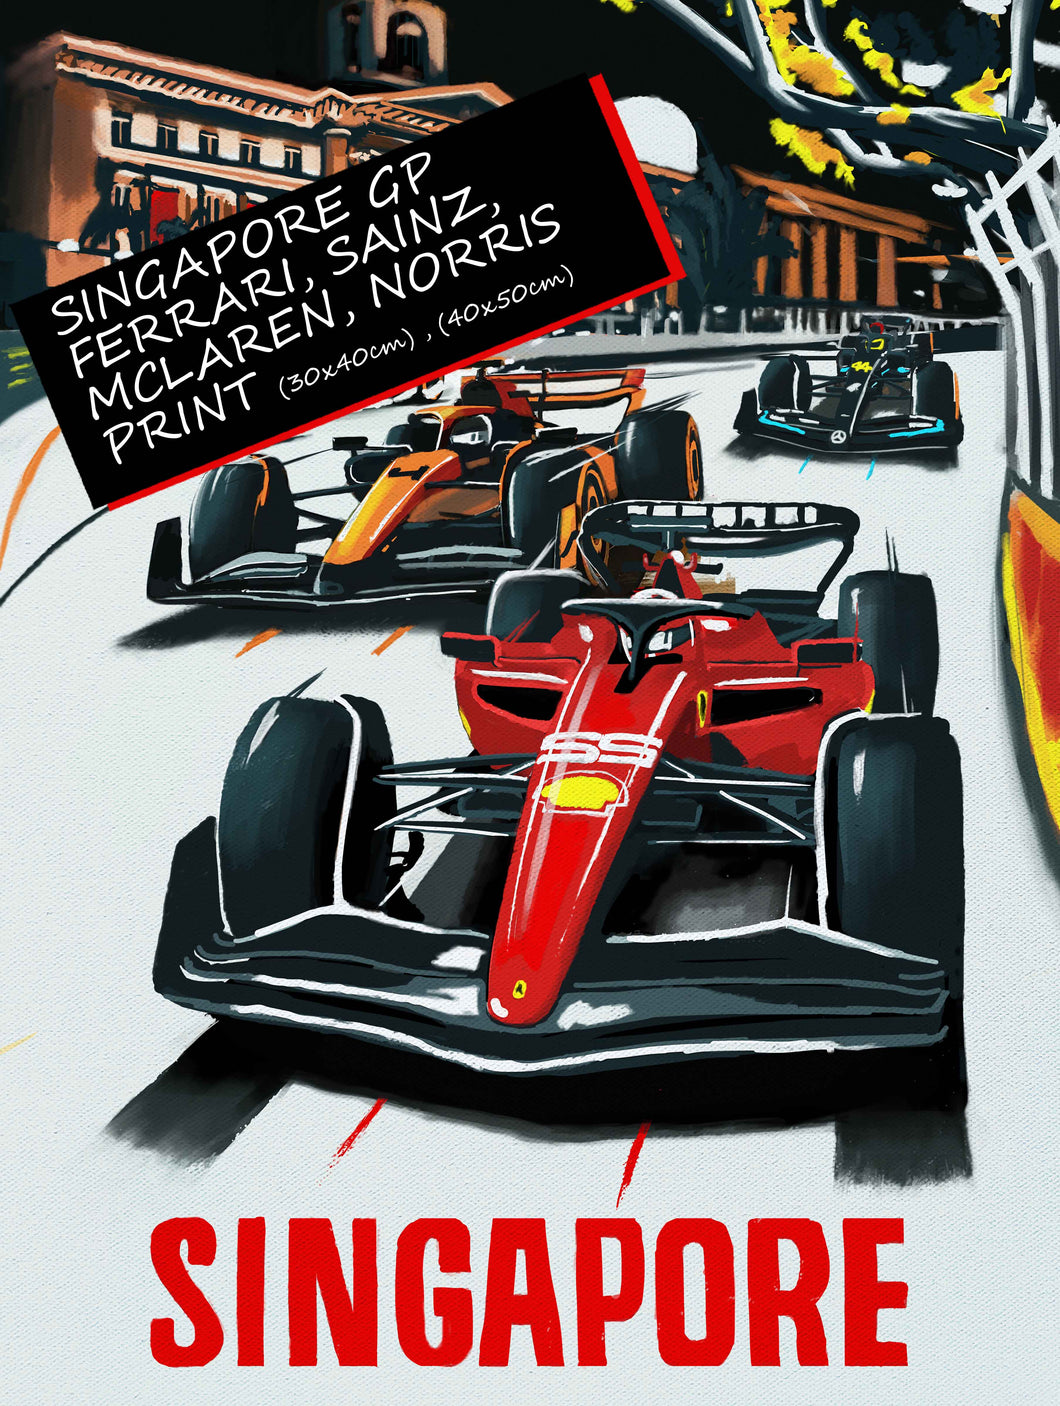 Singapore Grand Prix - Ferrari, Sainz, McLaren, Norris, - Formula 1 Art Print - F1 Fine Art Print